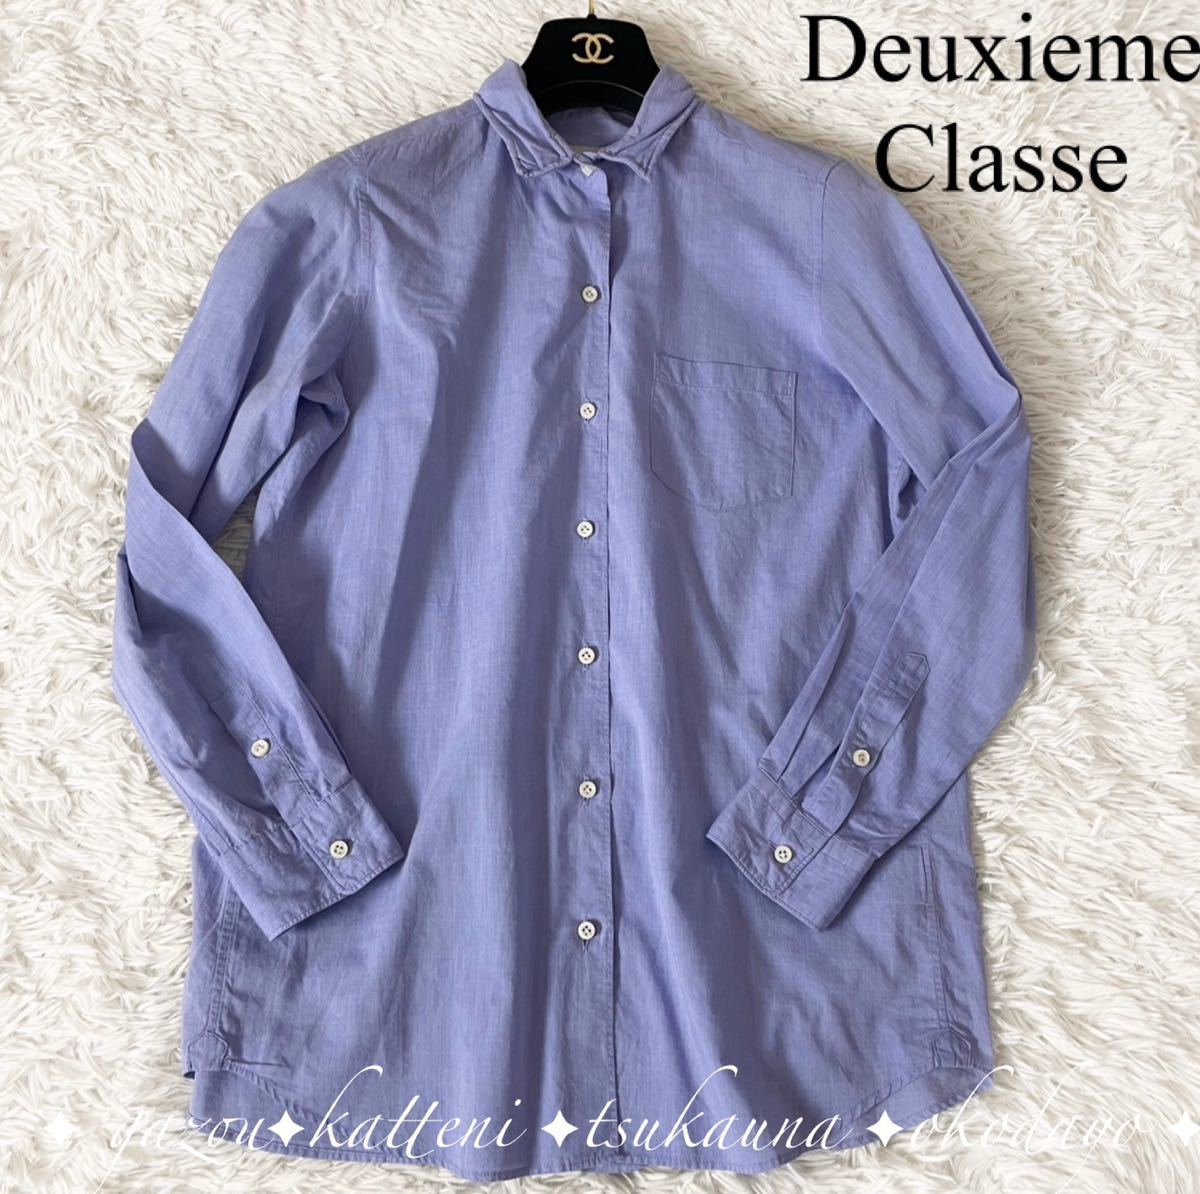 Deuxieme Classe ドゥーズィエムクラス ワイヤー襟 コットン100% 長袖 シャツ ブラウス 日本製 ブルー 青 フリーサイズ